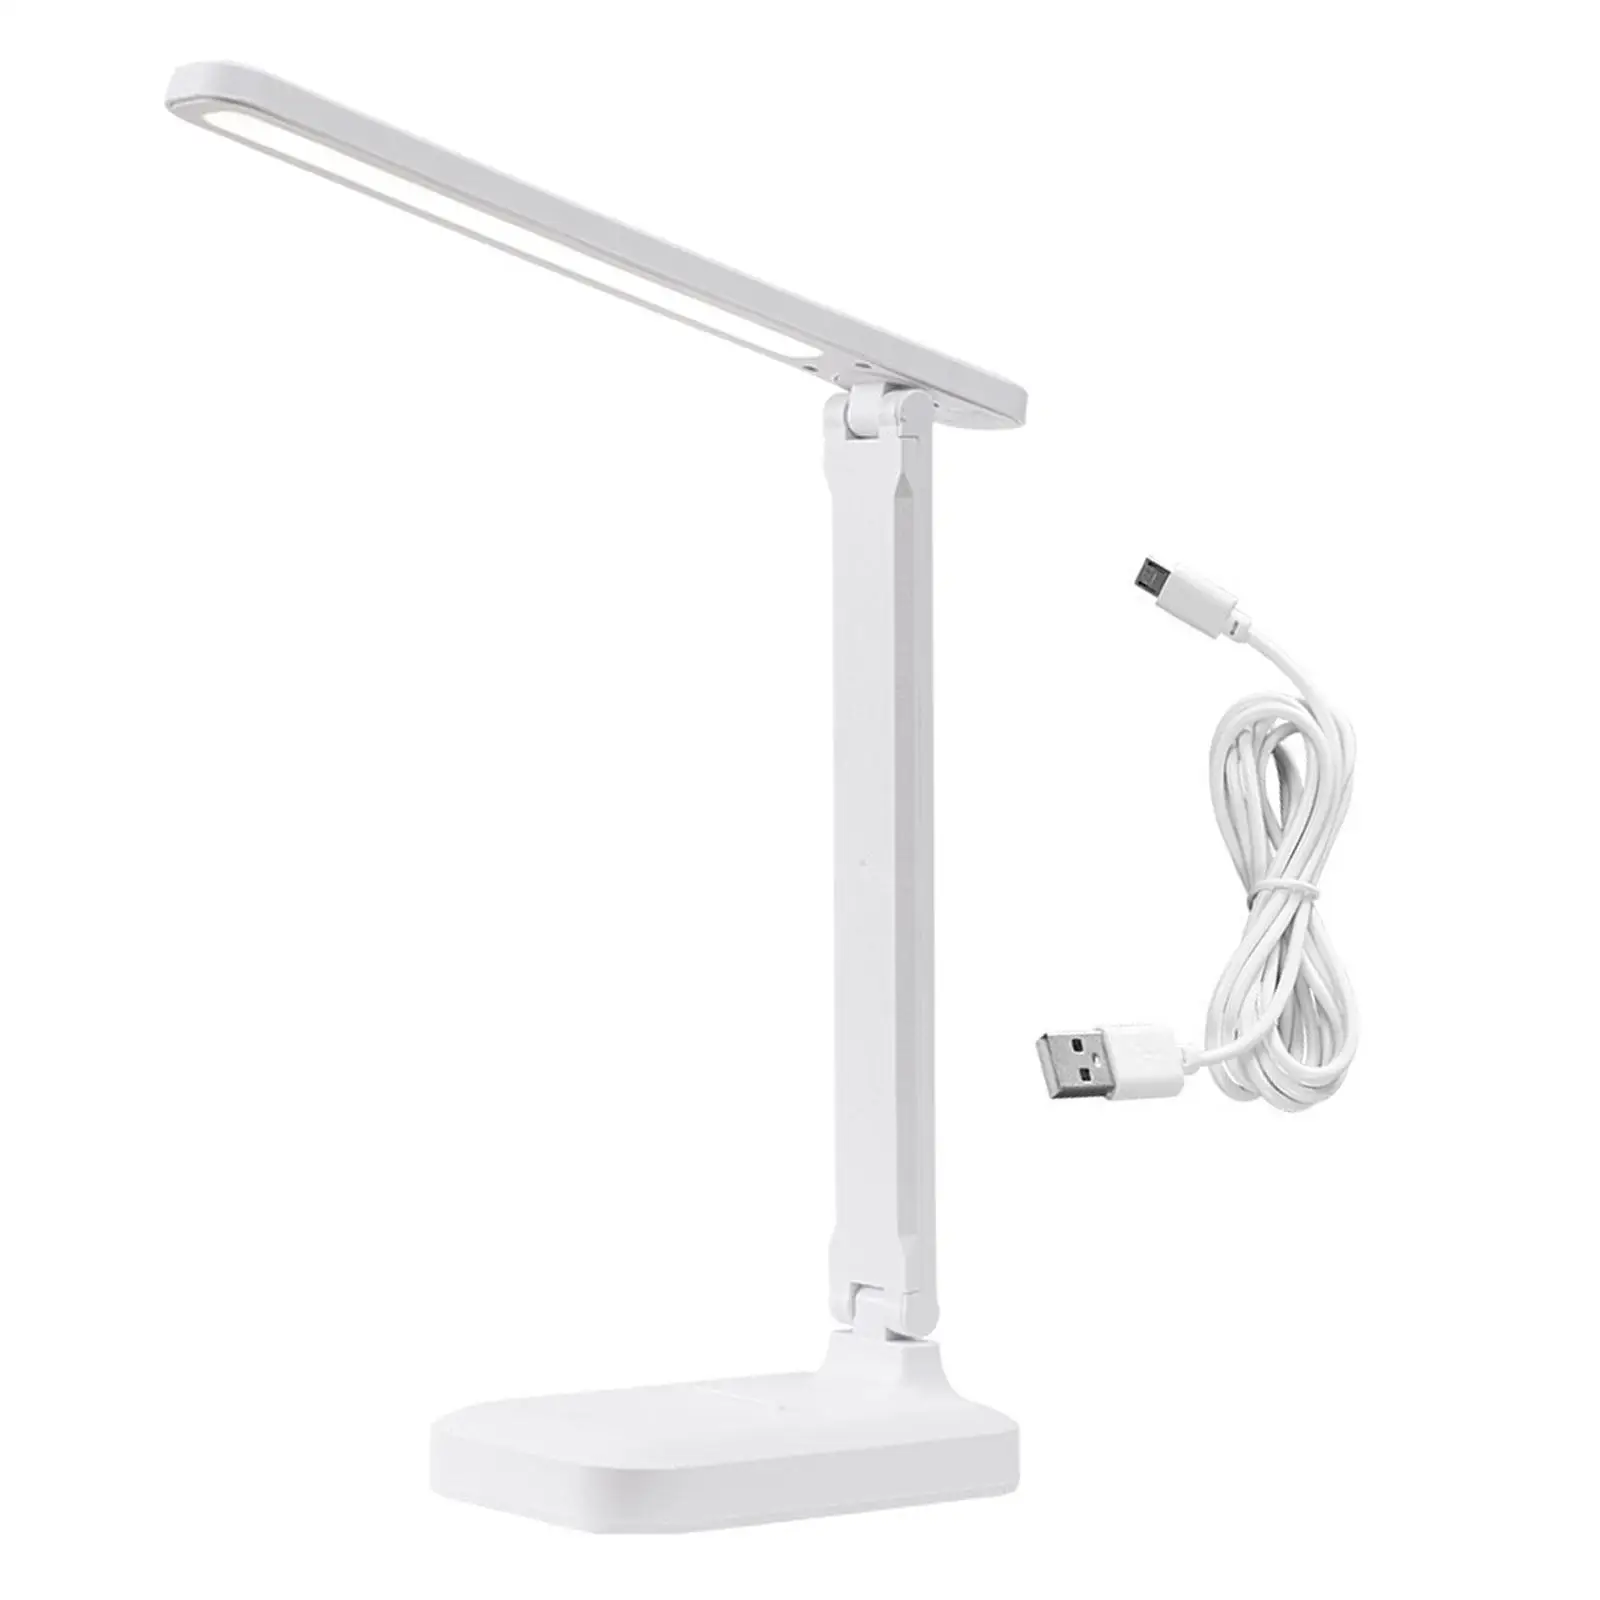 LED Desk Lamp Modern Portable 3 Adjustable Brightness Table Light Desk Night Light for Dorm Gift Home Study Room Bedroom